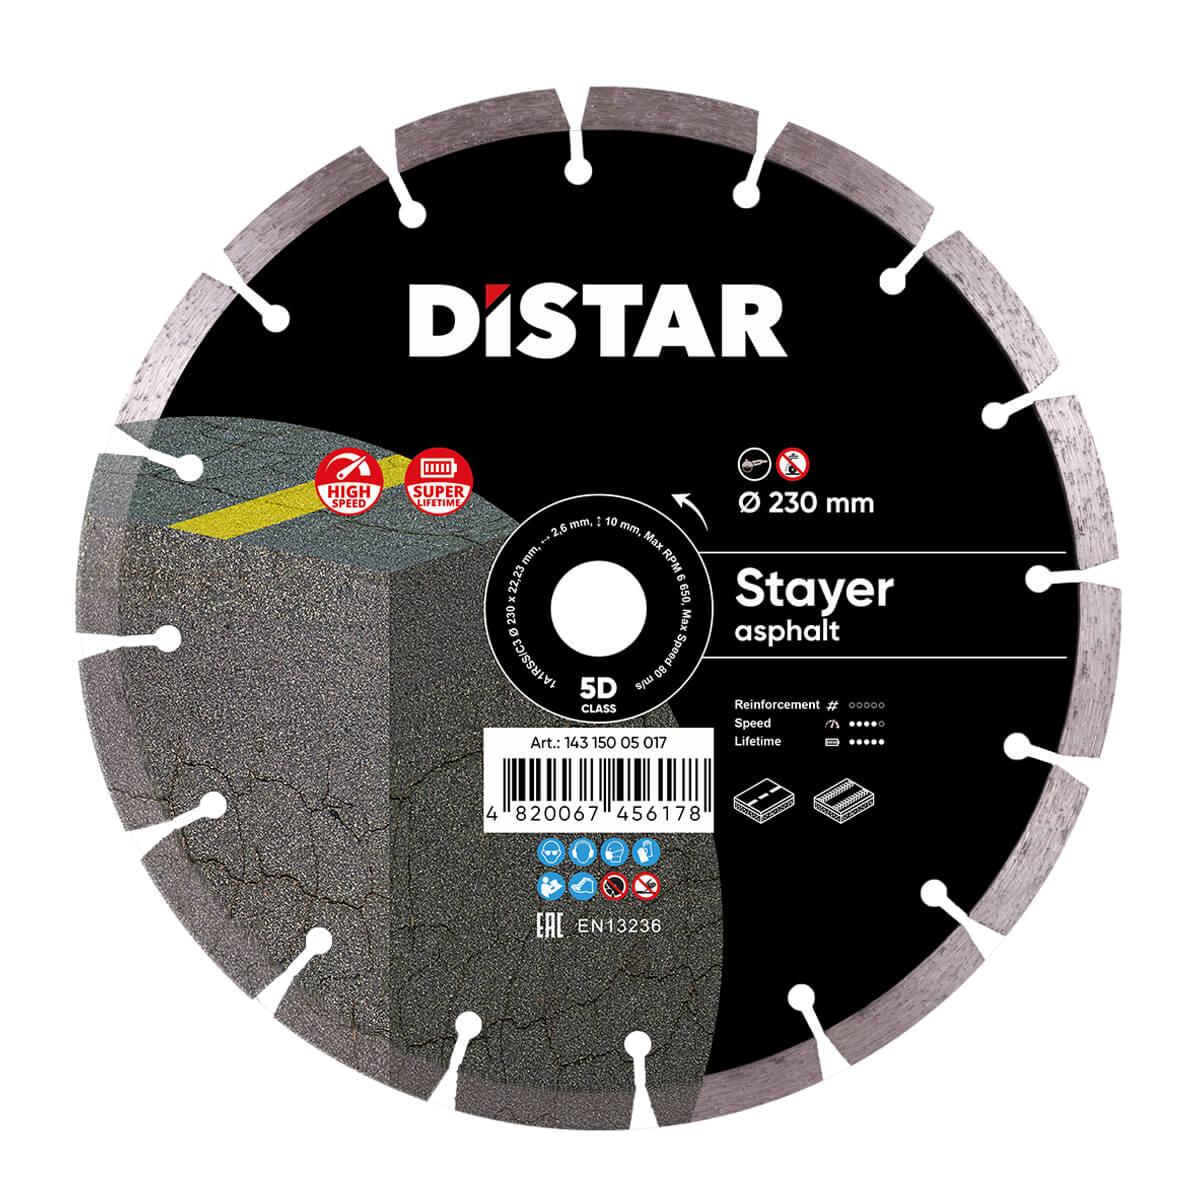 Диск алмазний по бетону Distar 1A1RSS/C3 STAYER 230x22.2x2.6 мм (14315005017)